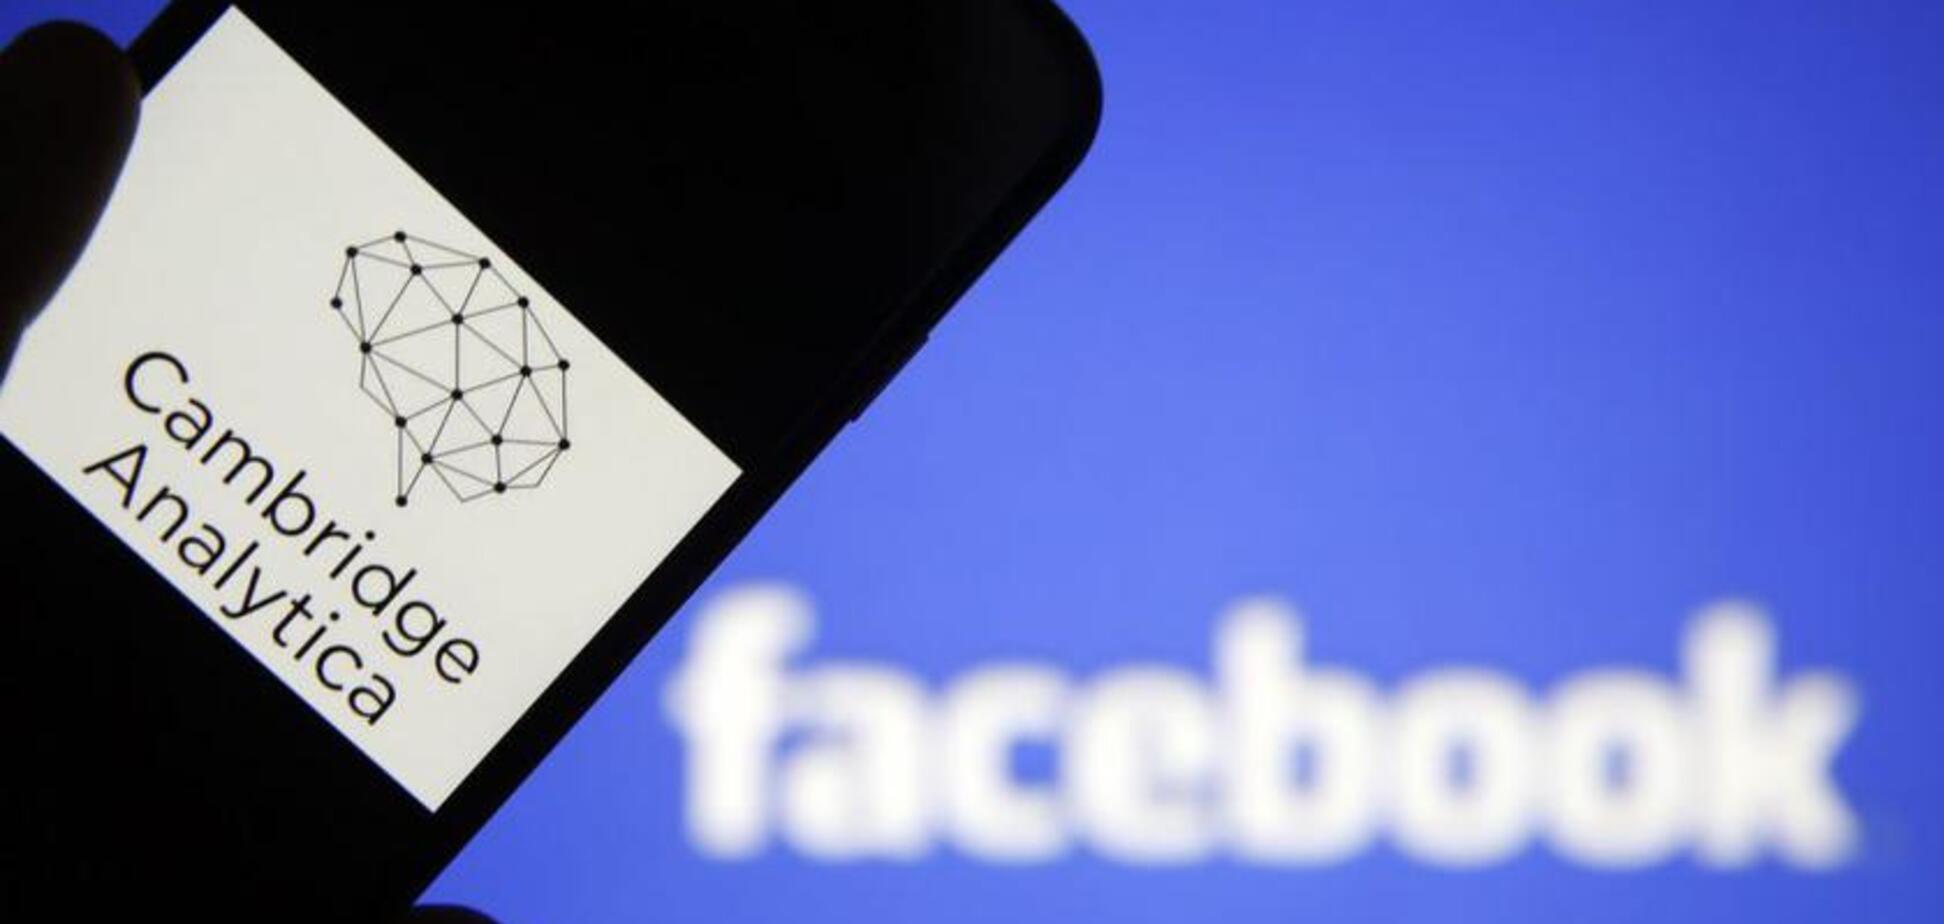 Скандал с Facebook: компания, 'сливавшая' личные данные, закрылась